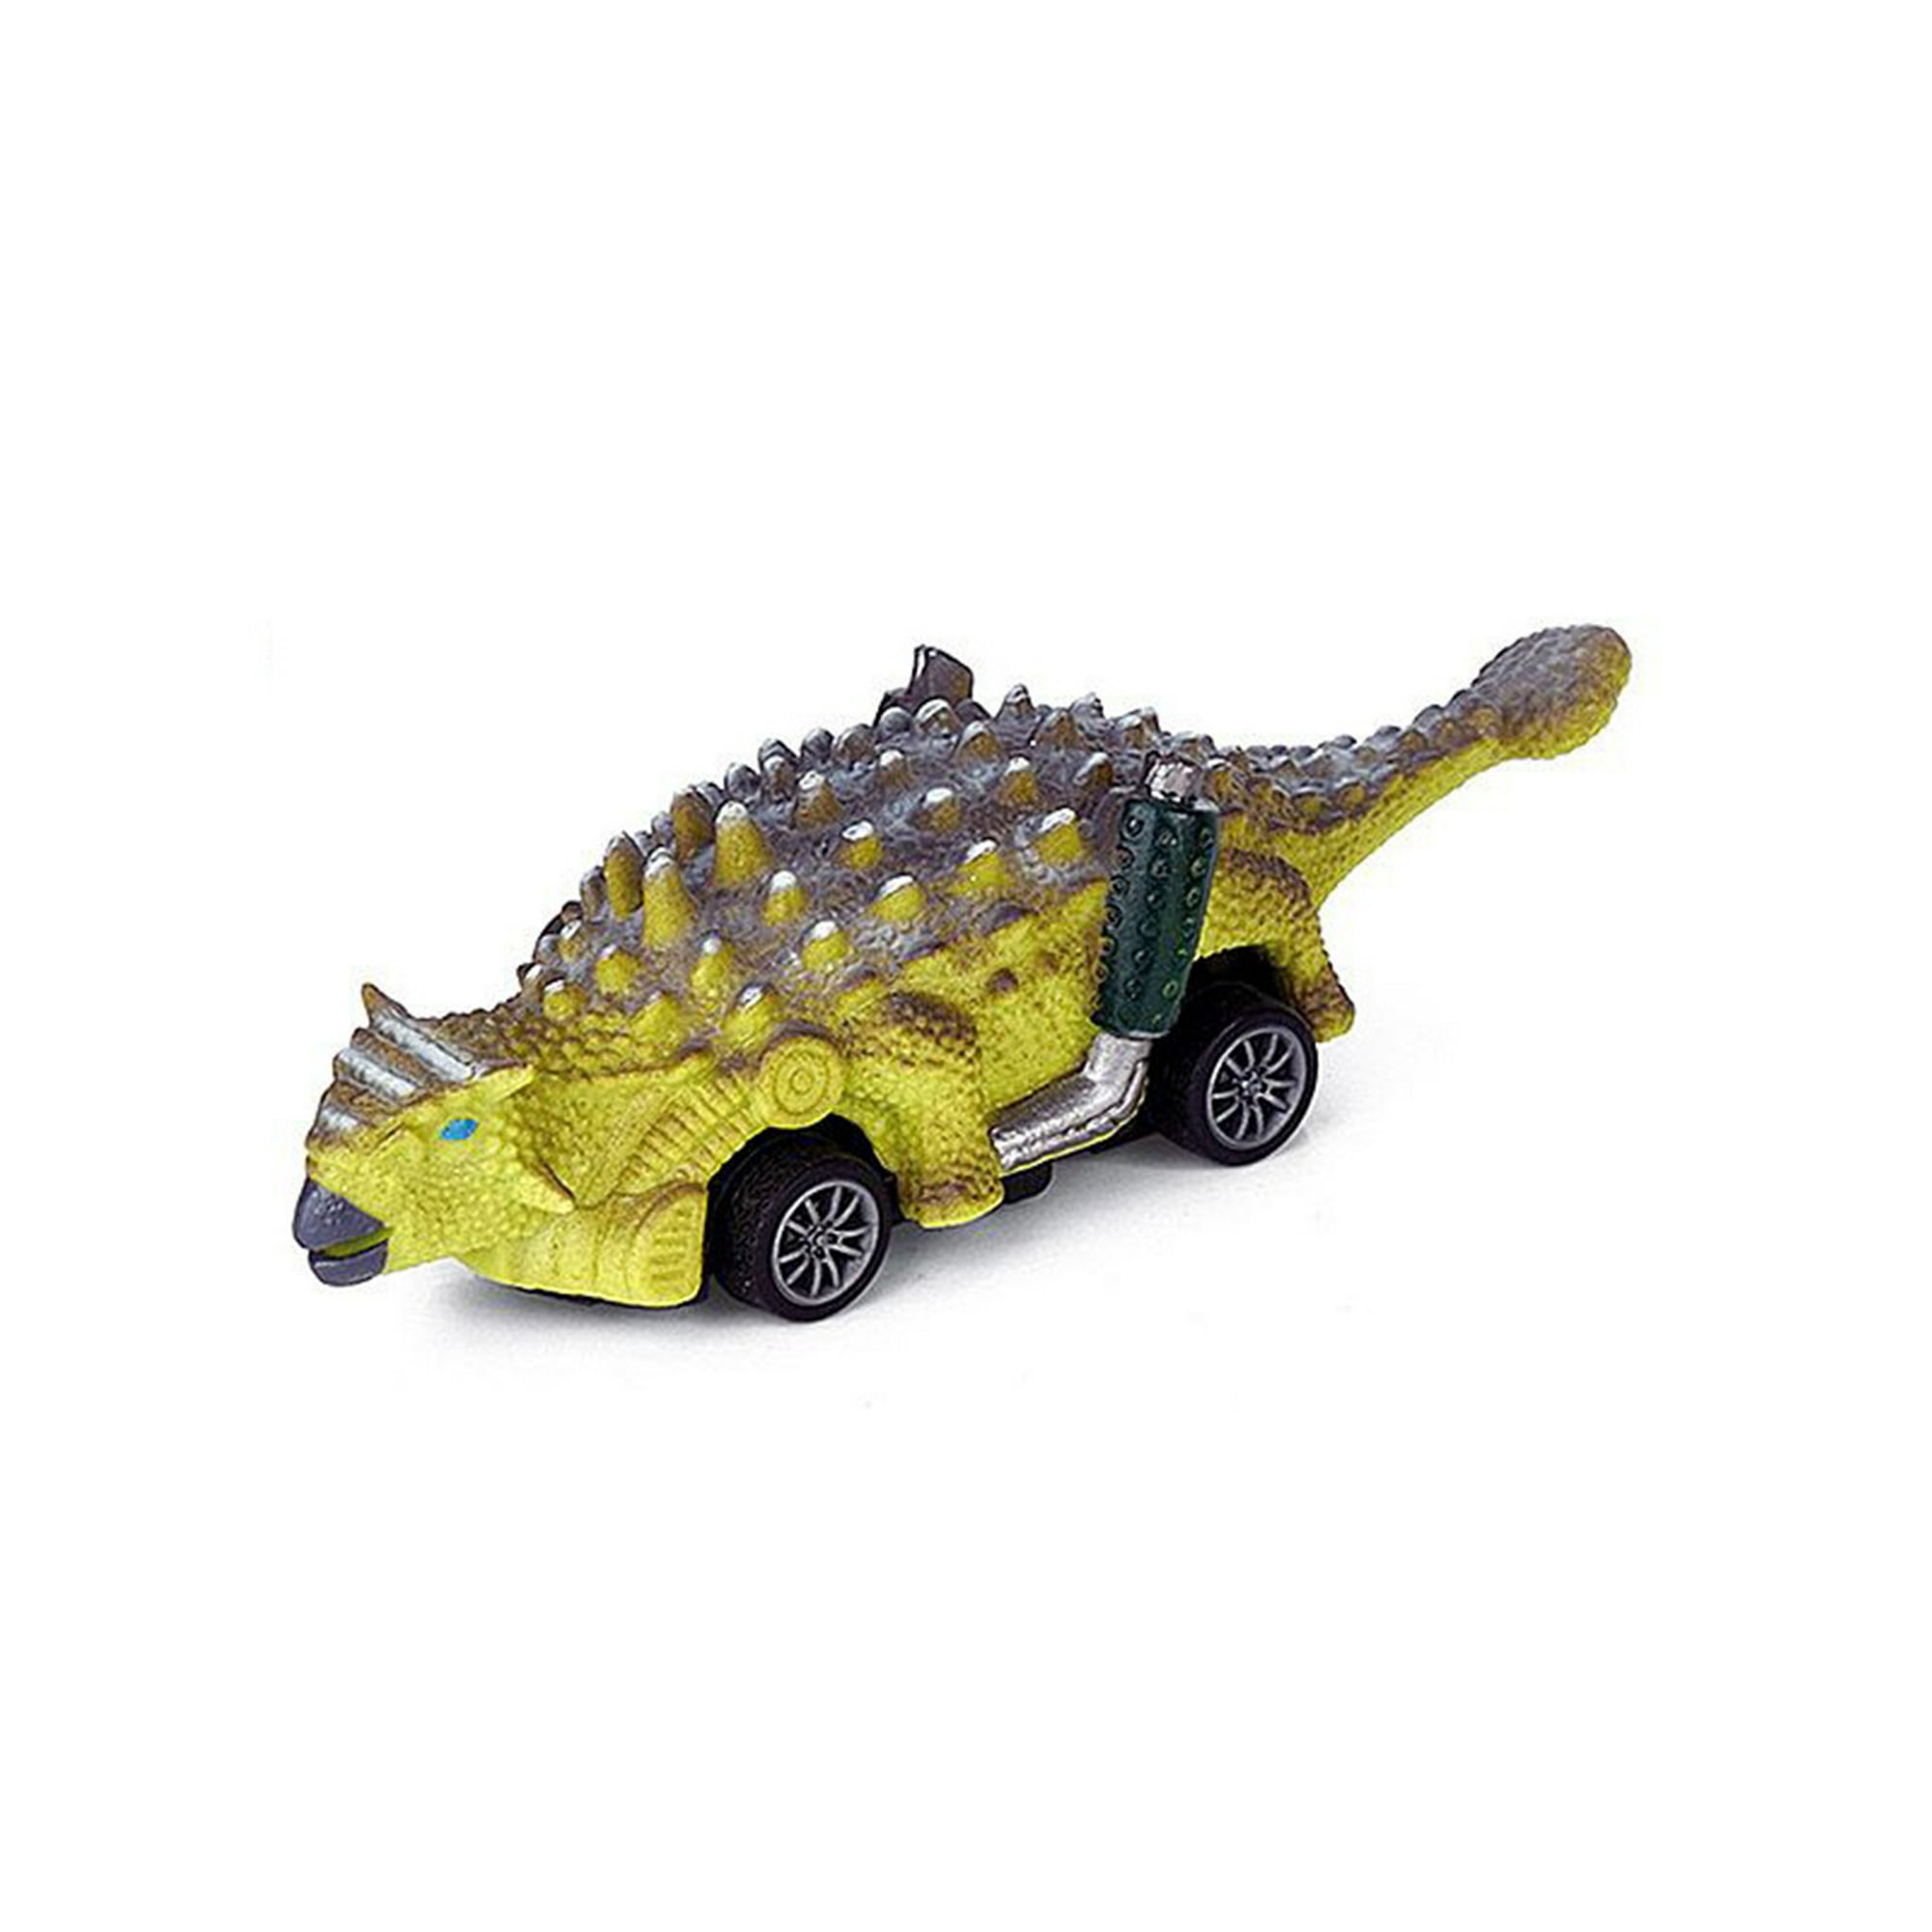 COVTOY Regalo para niño de 1 año, 4 juegos de vehículos de juguete de  dinosaurio con tapete de juego y bolsa de almacenamiento, juguetes para  bebés de